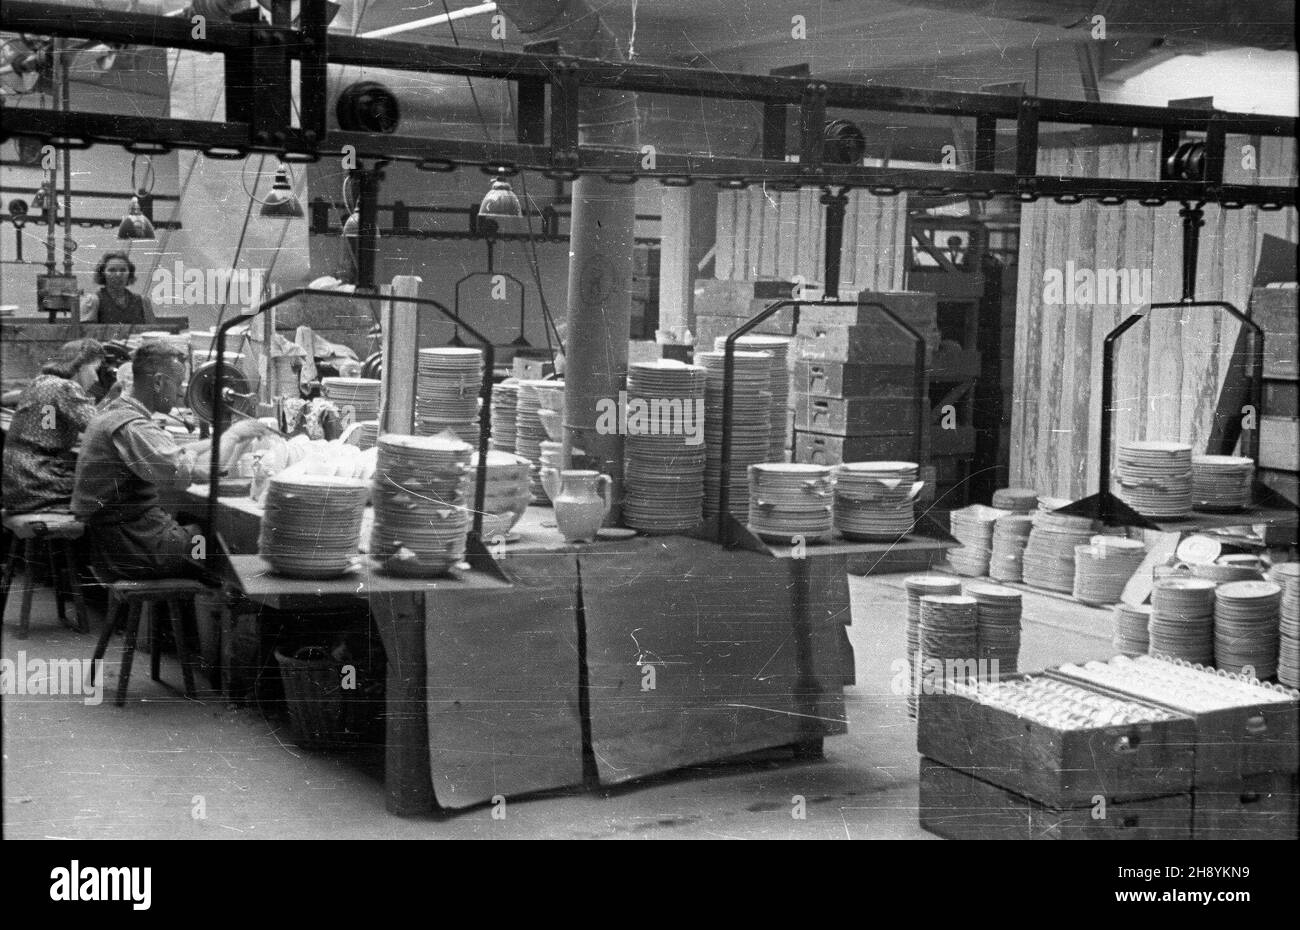 Wa³brzych, 10.1946. Znana w Europie fabryka porcelany za³o¿ona w 1845 r. przez Carla Tielscha. W 1945 r. przejêta przez pañstwo i przemianowana na Zak³ady Porcelany Sto³owej Wa³brzych.  po/dl  PAP/Stanis³aw D¹browiecki      Walbrzych, Oct 1946. Famous in Europe porcelain factory, founded by Carl Tielsch in 1845. In 1945 taken over by the state and renamed China Tableware Plant Walbrzych.   po/dl  PAP/Stanislaw Dabrowiecki Stock Photo